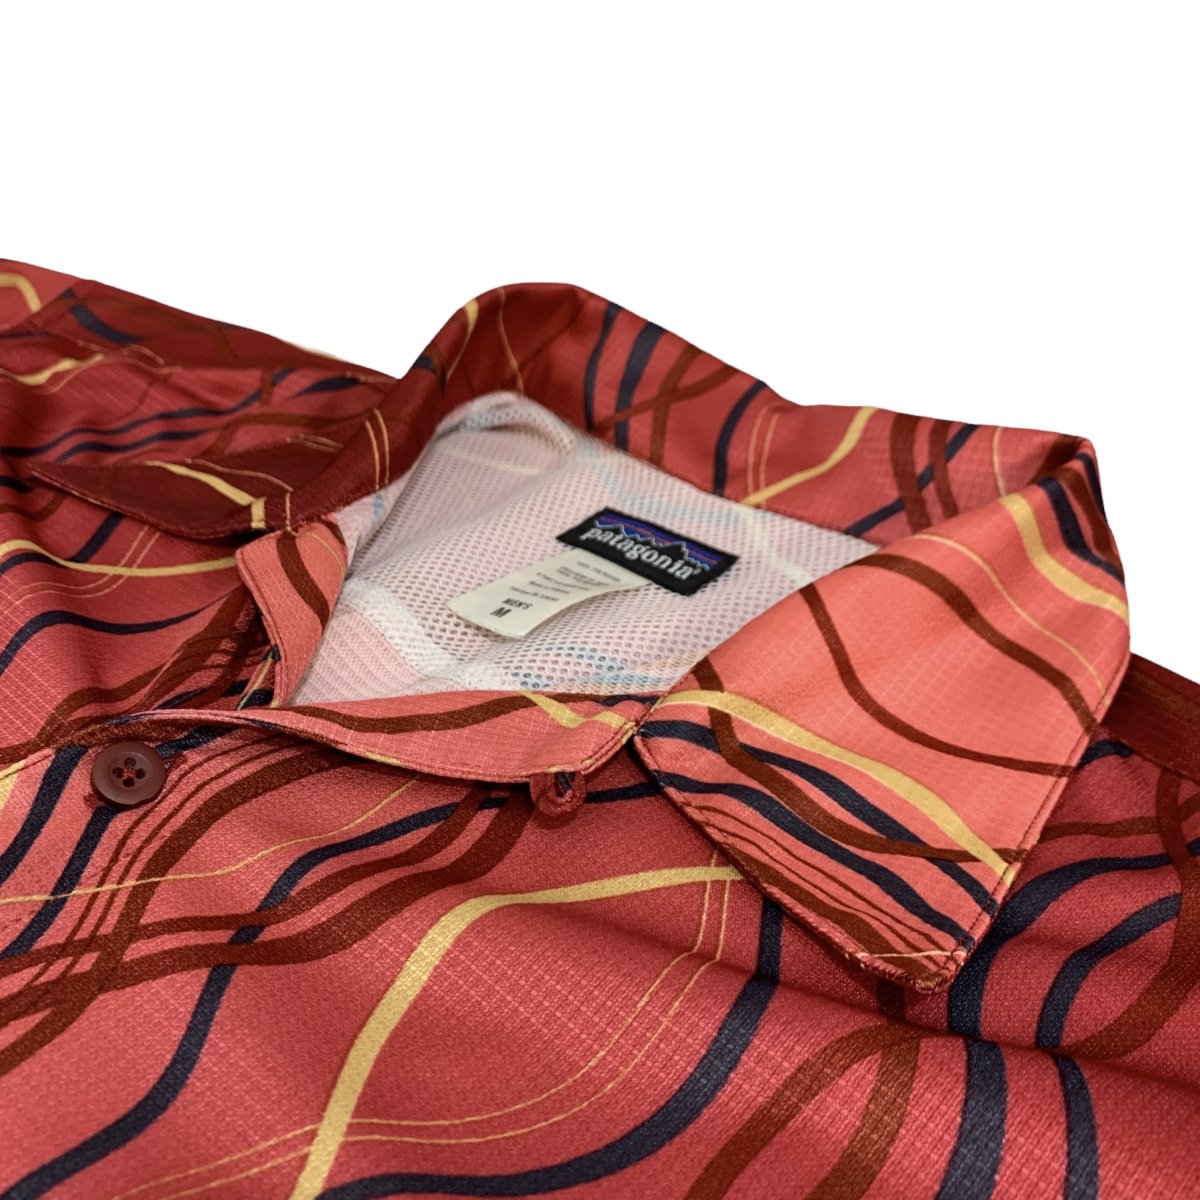 05年製 patagonia Rhythm Inyo S/S Shirt 赤 M パタゴニア リズムシリーズ 半袖 開襟シャツ インヨシャツ 総柄  クライミング レッド 20801 S5 古着 - NEWJOKE ONLINE STORE